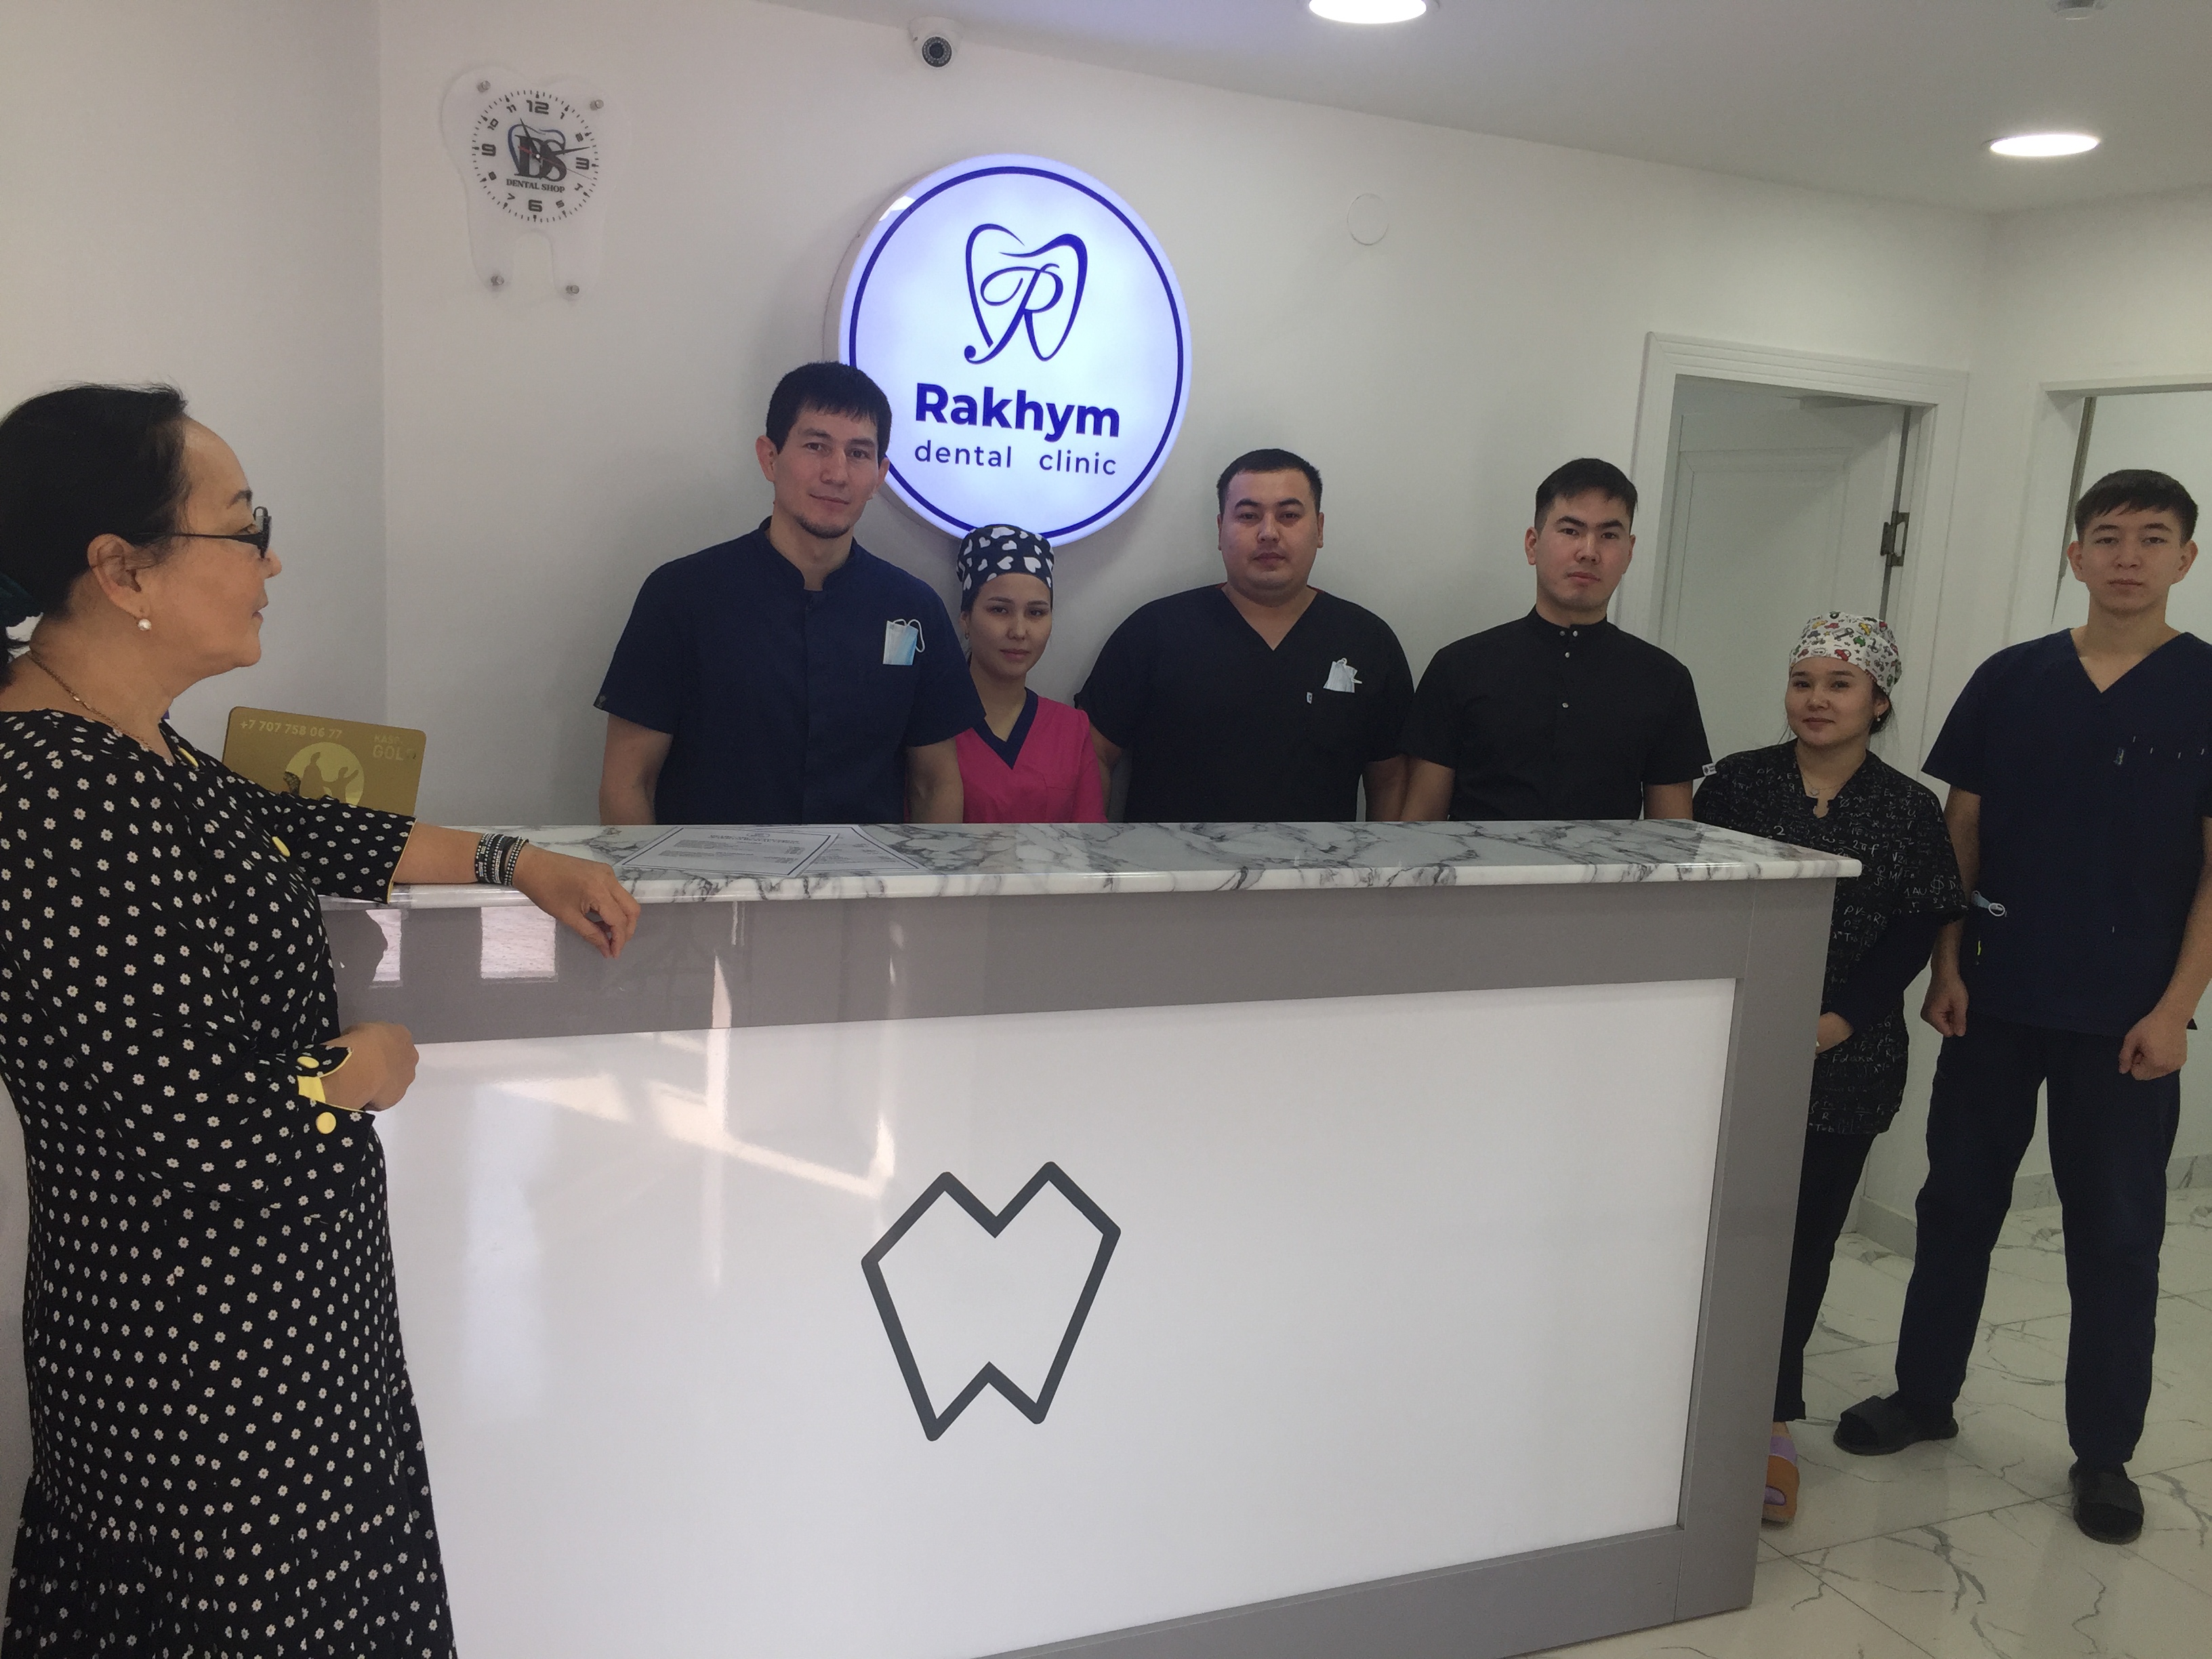 Проведена информационно-разъяснительная работа среди с работников клиники  «Rakhym dental clinik»